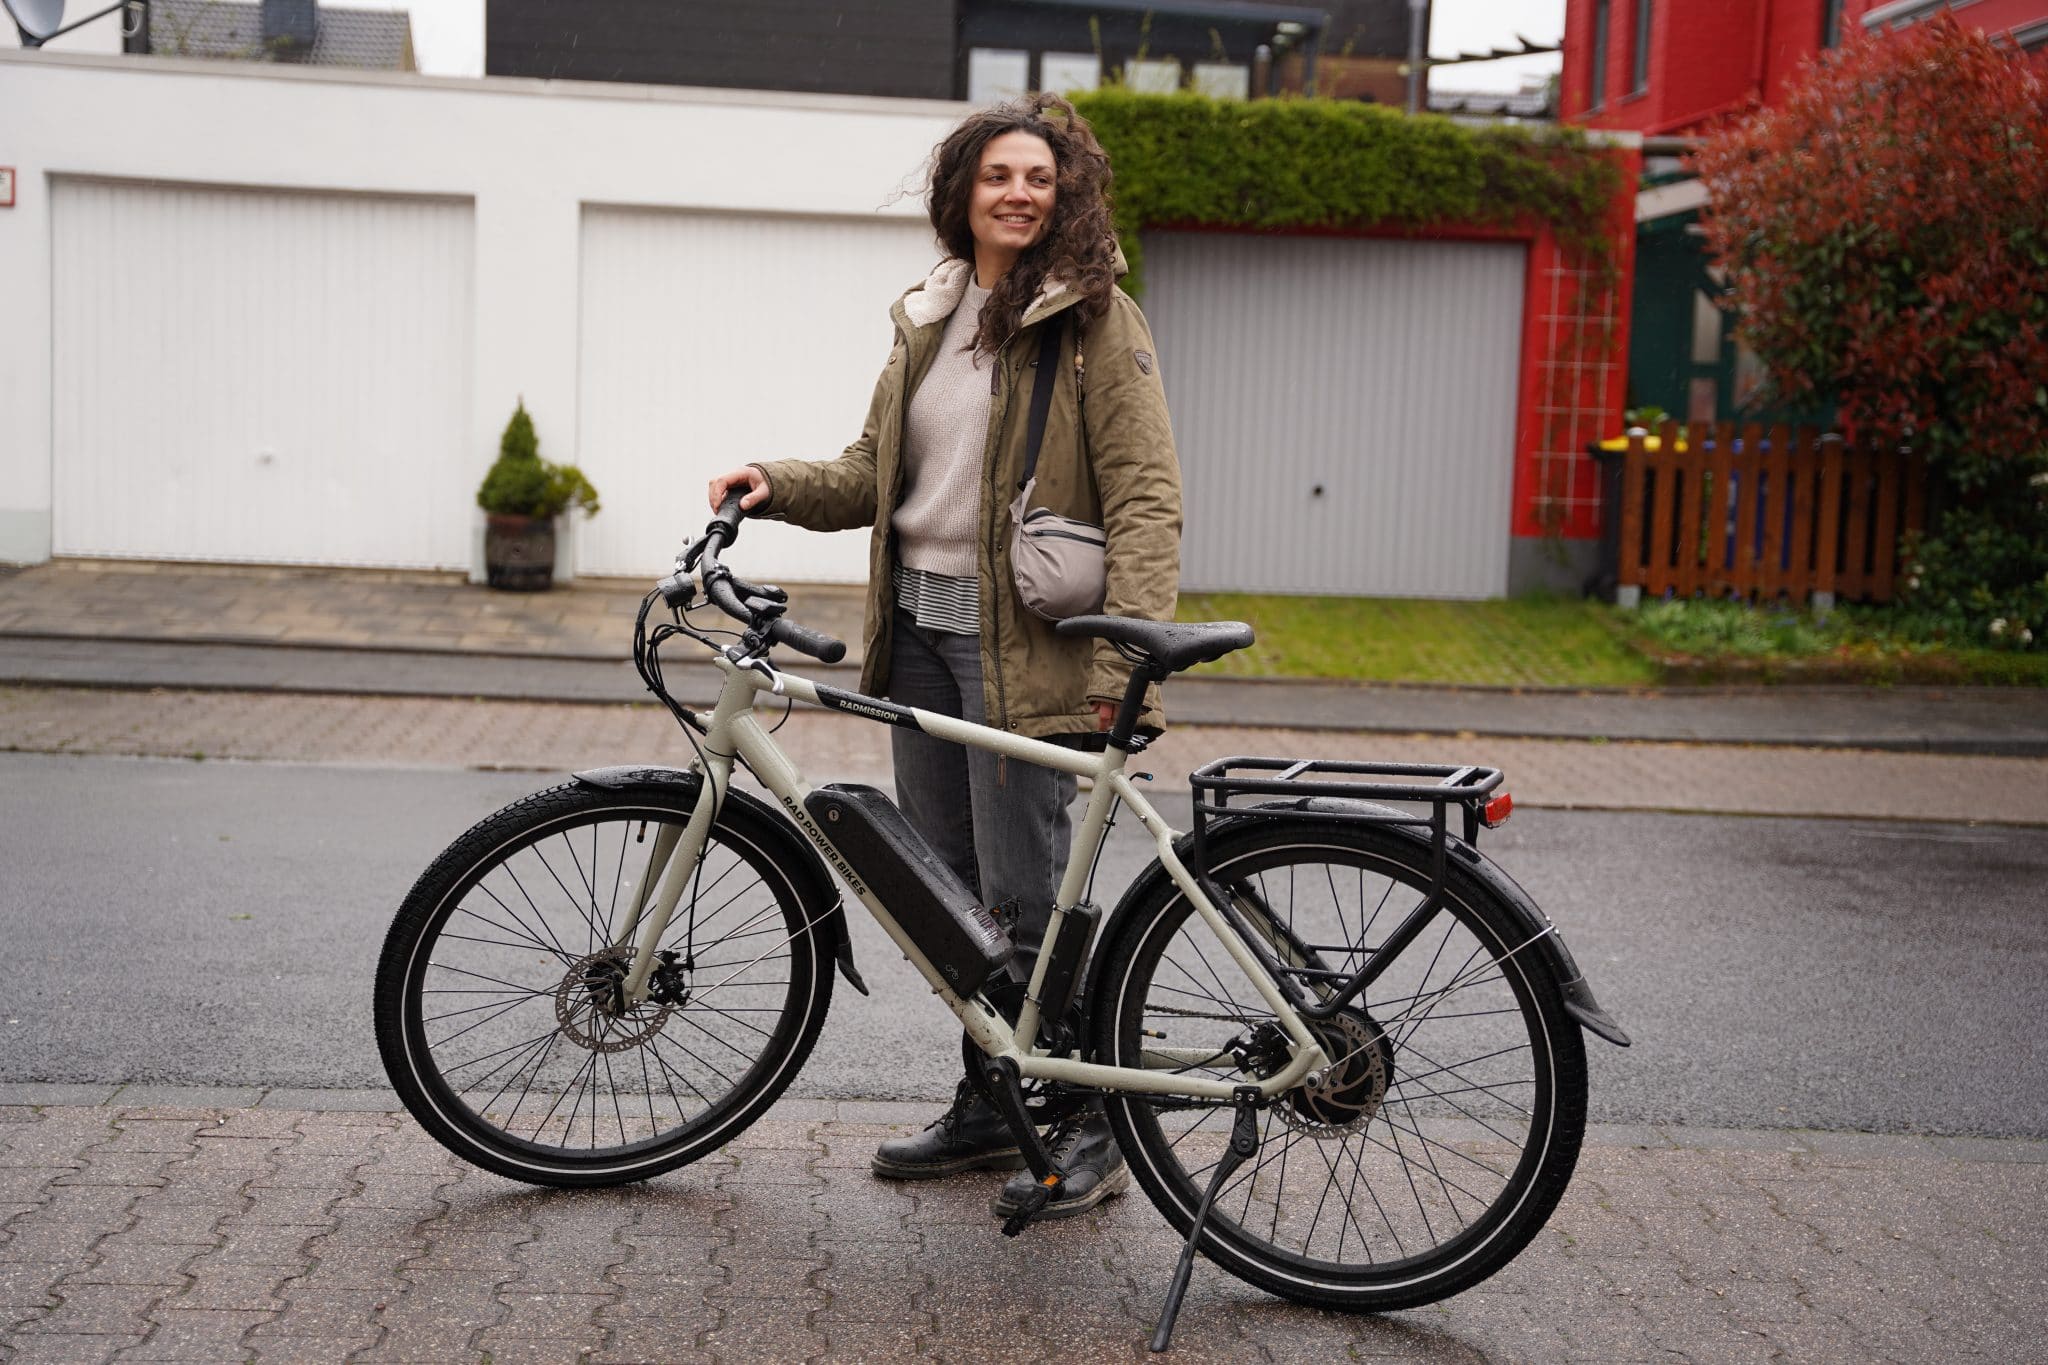 E-Bike | Fahrrad | Regenkleidung - A7300500 scaled - ebike-news.de